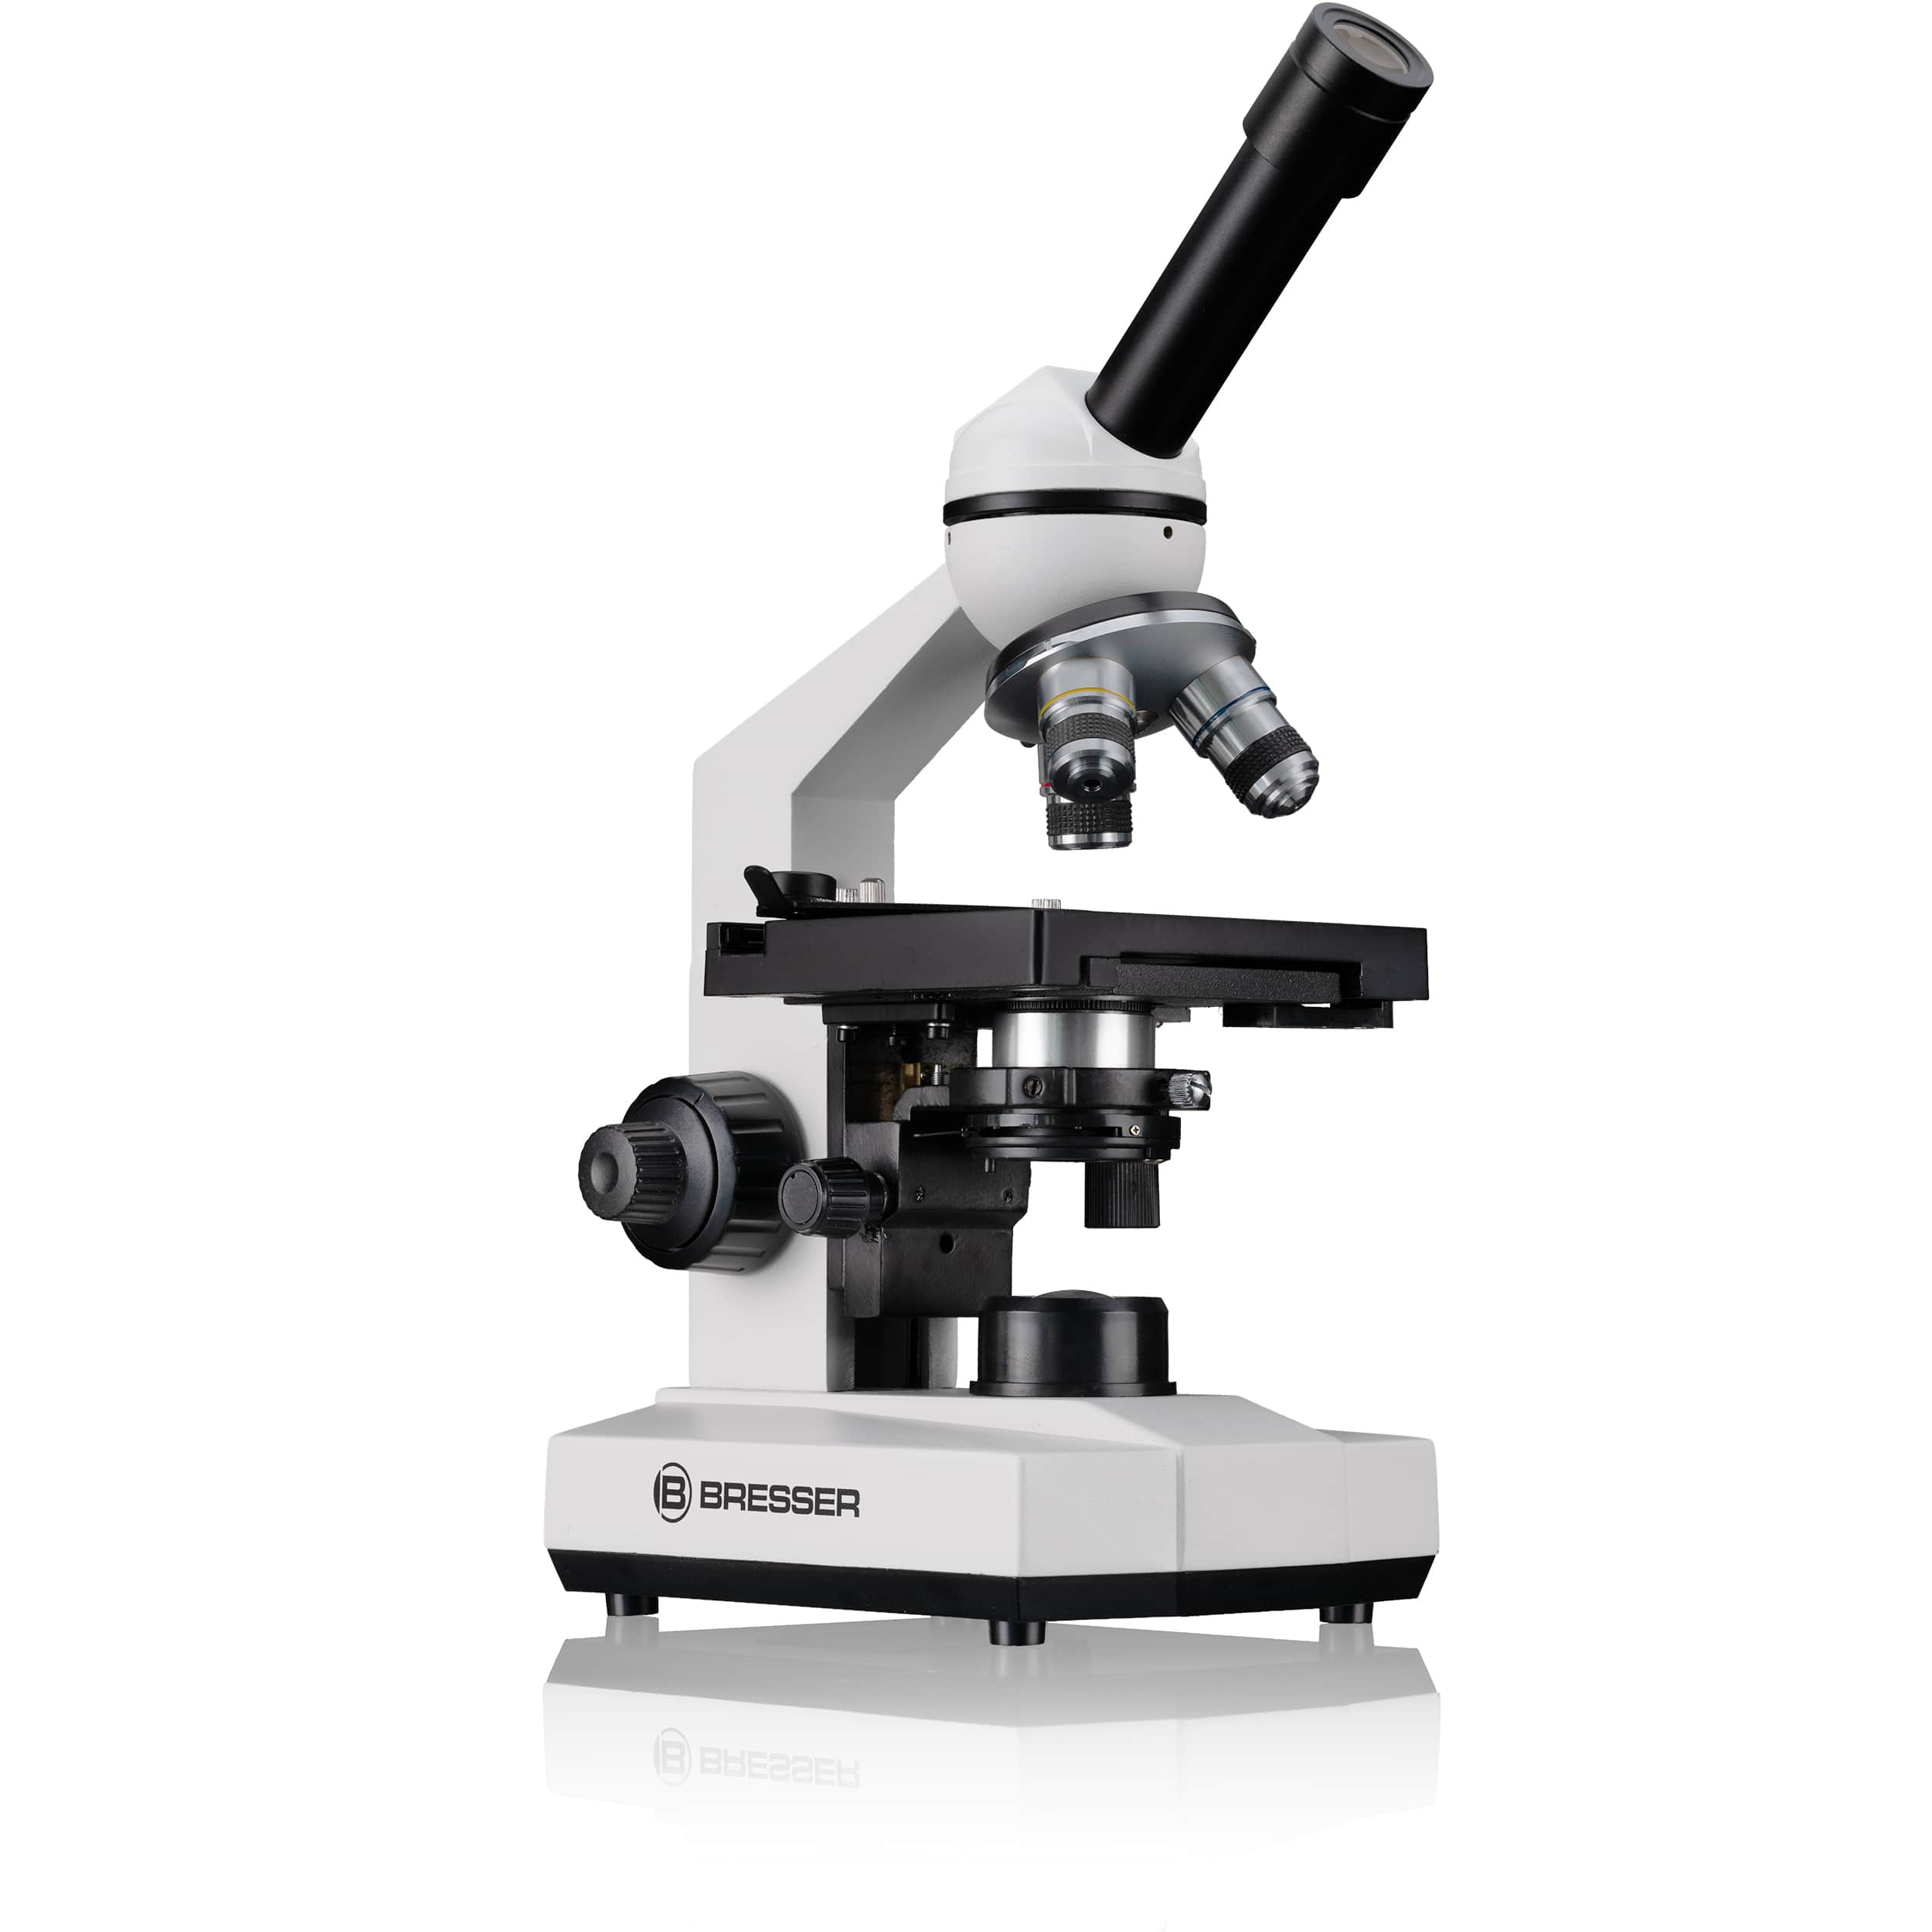  Microscopio per la scuola compatto e ben attrezzato nella pratica valigetta
 
  